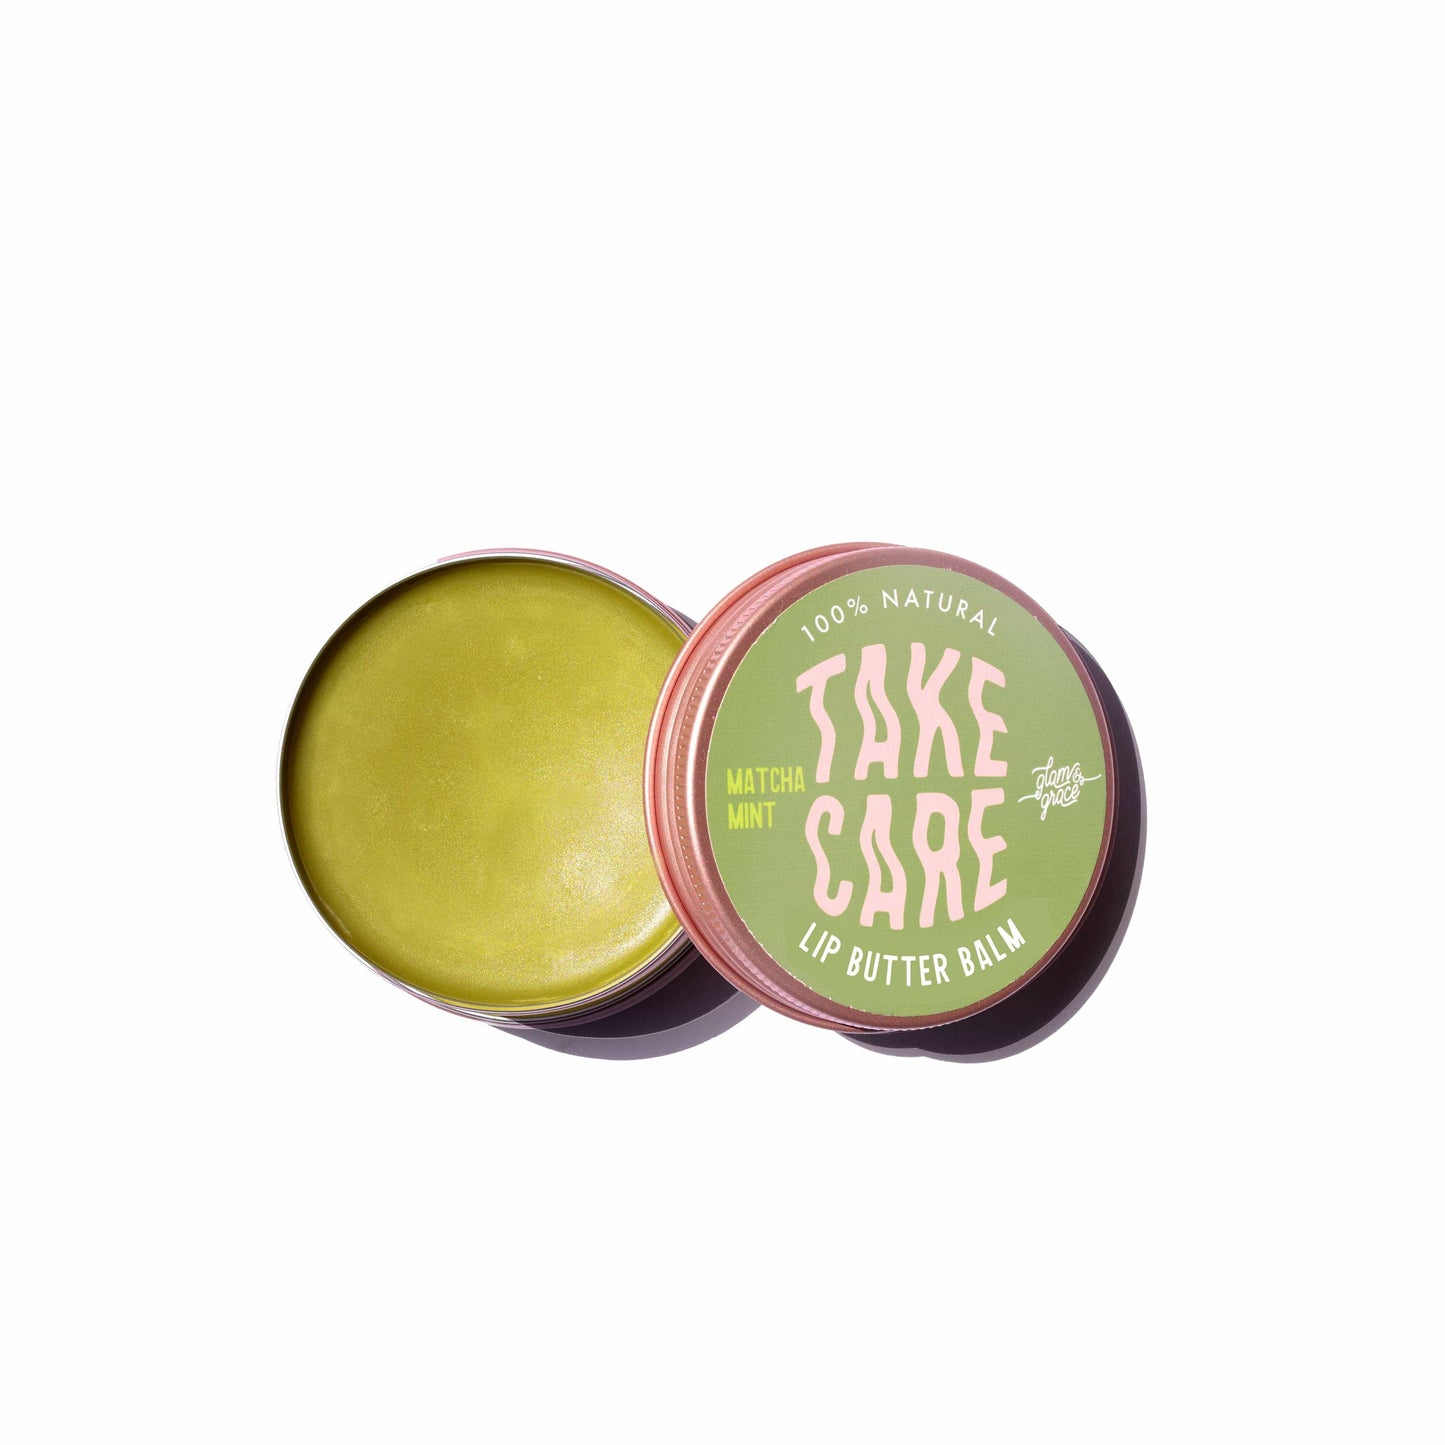 Glam & Grace Take Care - Lip Butter Balm - Matcha Mint